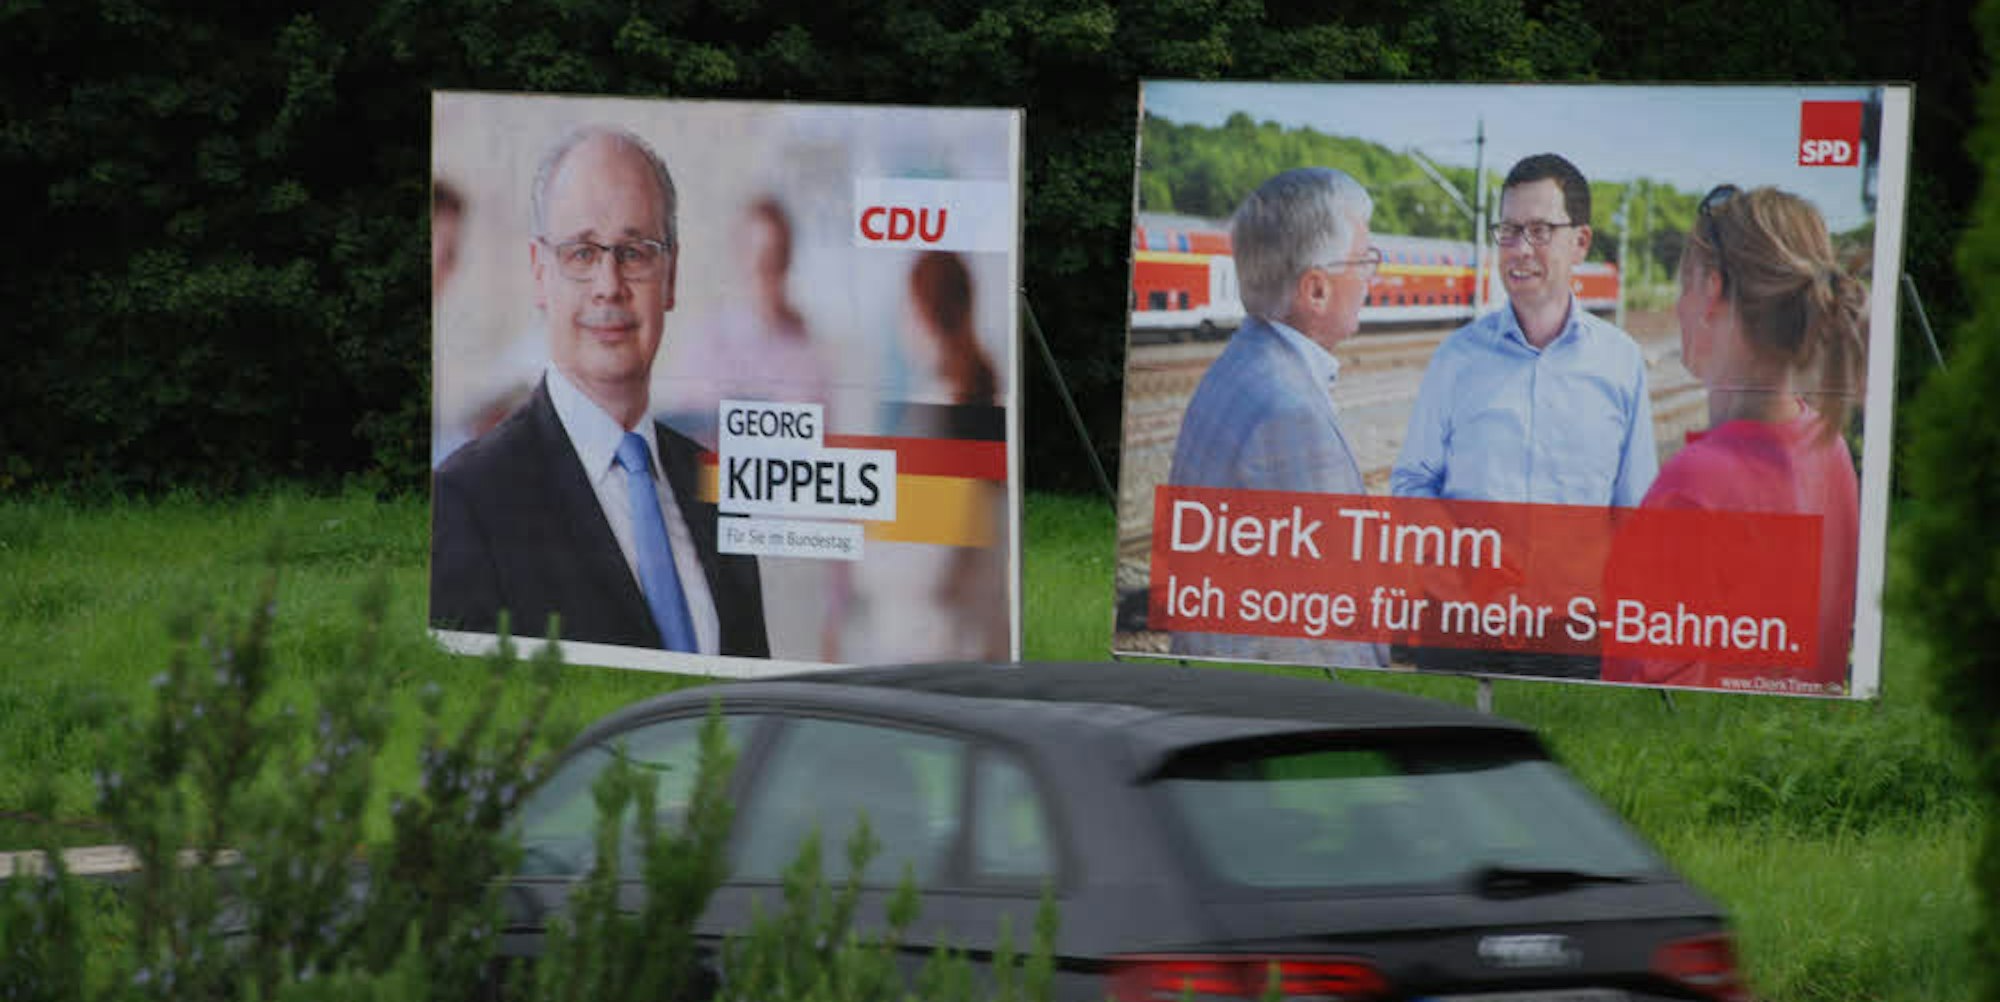 Noch zwei Wochen bis zur Bundestagswahl. Die Kandidaten versuchen die Zeit noch zu nutzen, um bei den Wählern zu punkten.